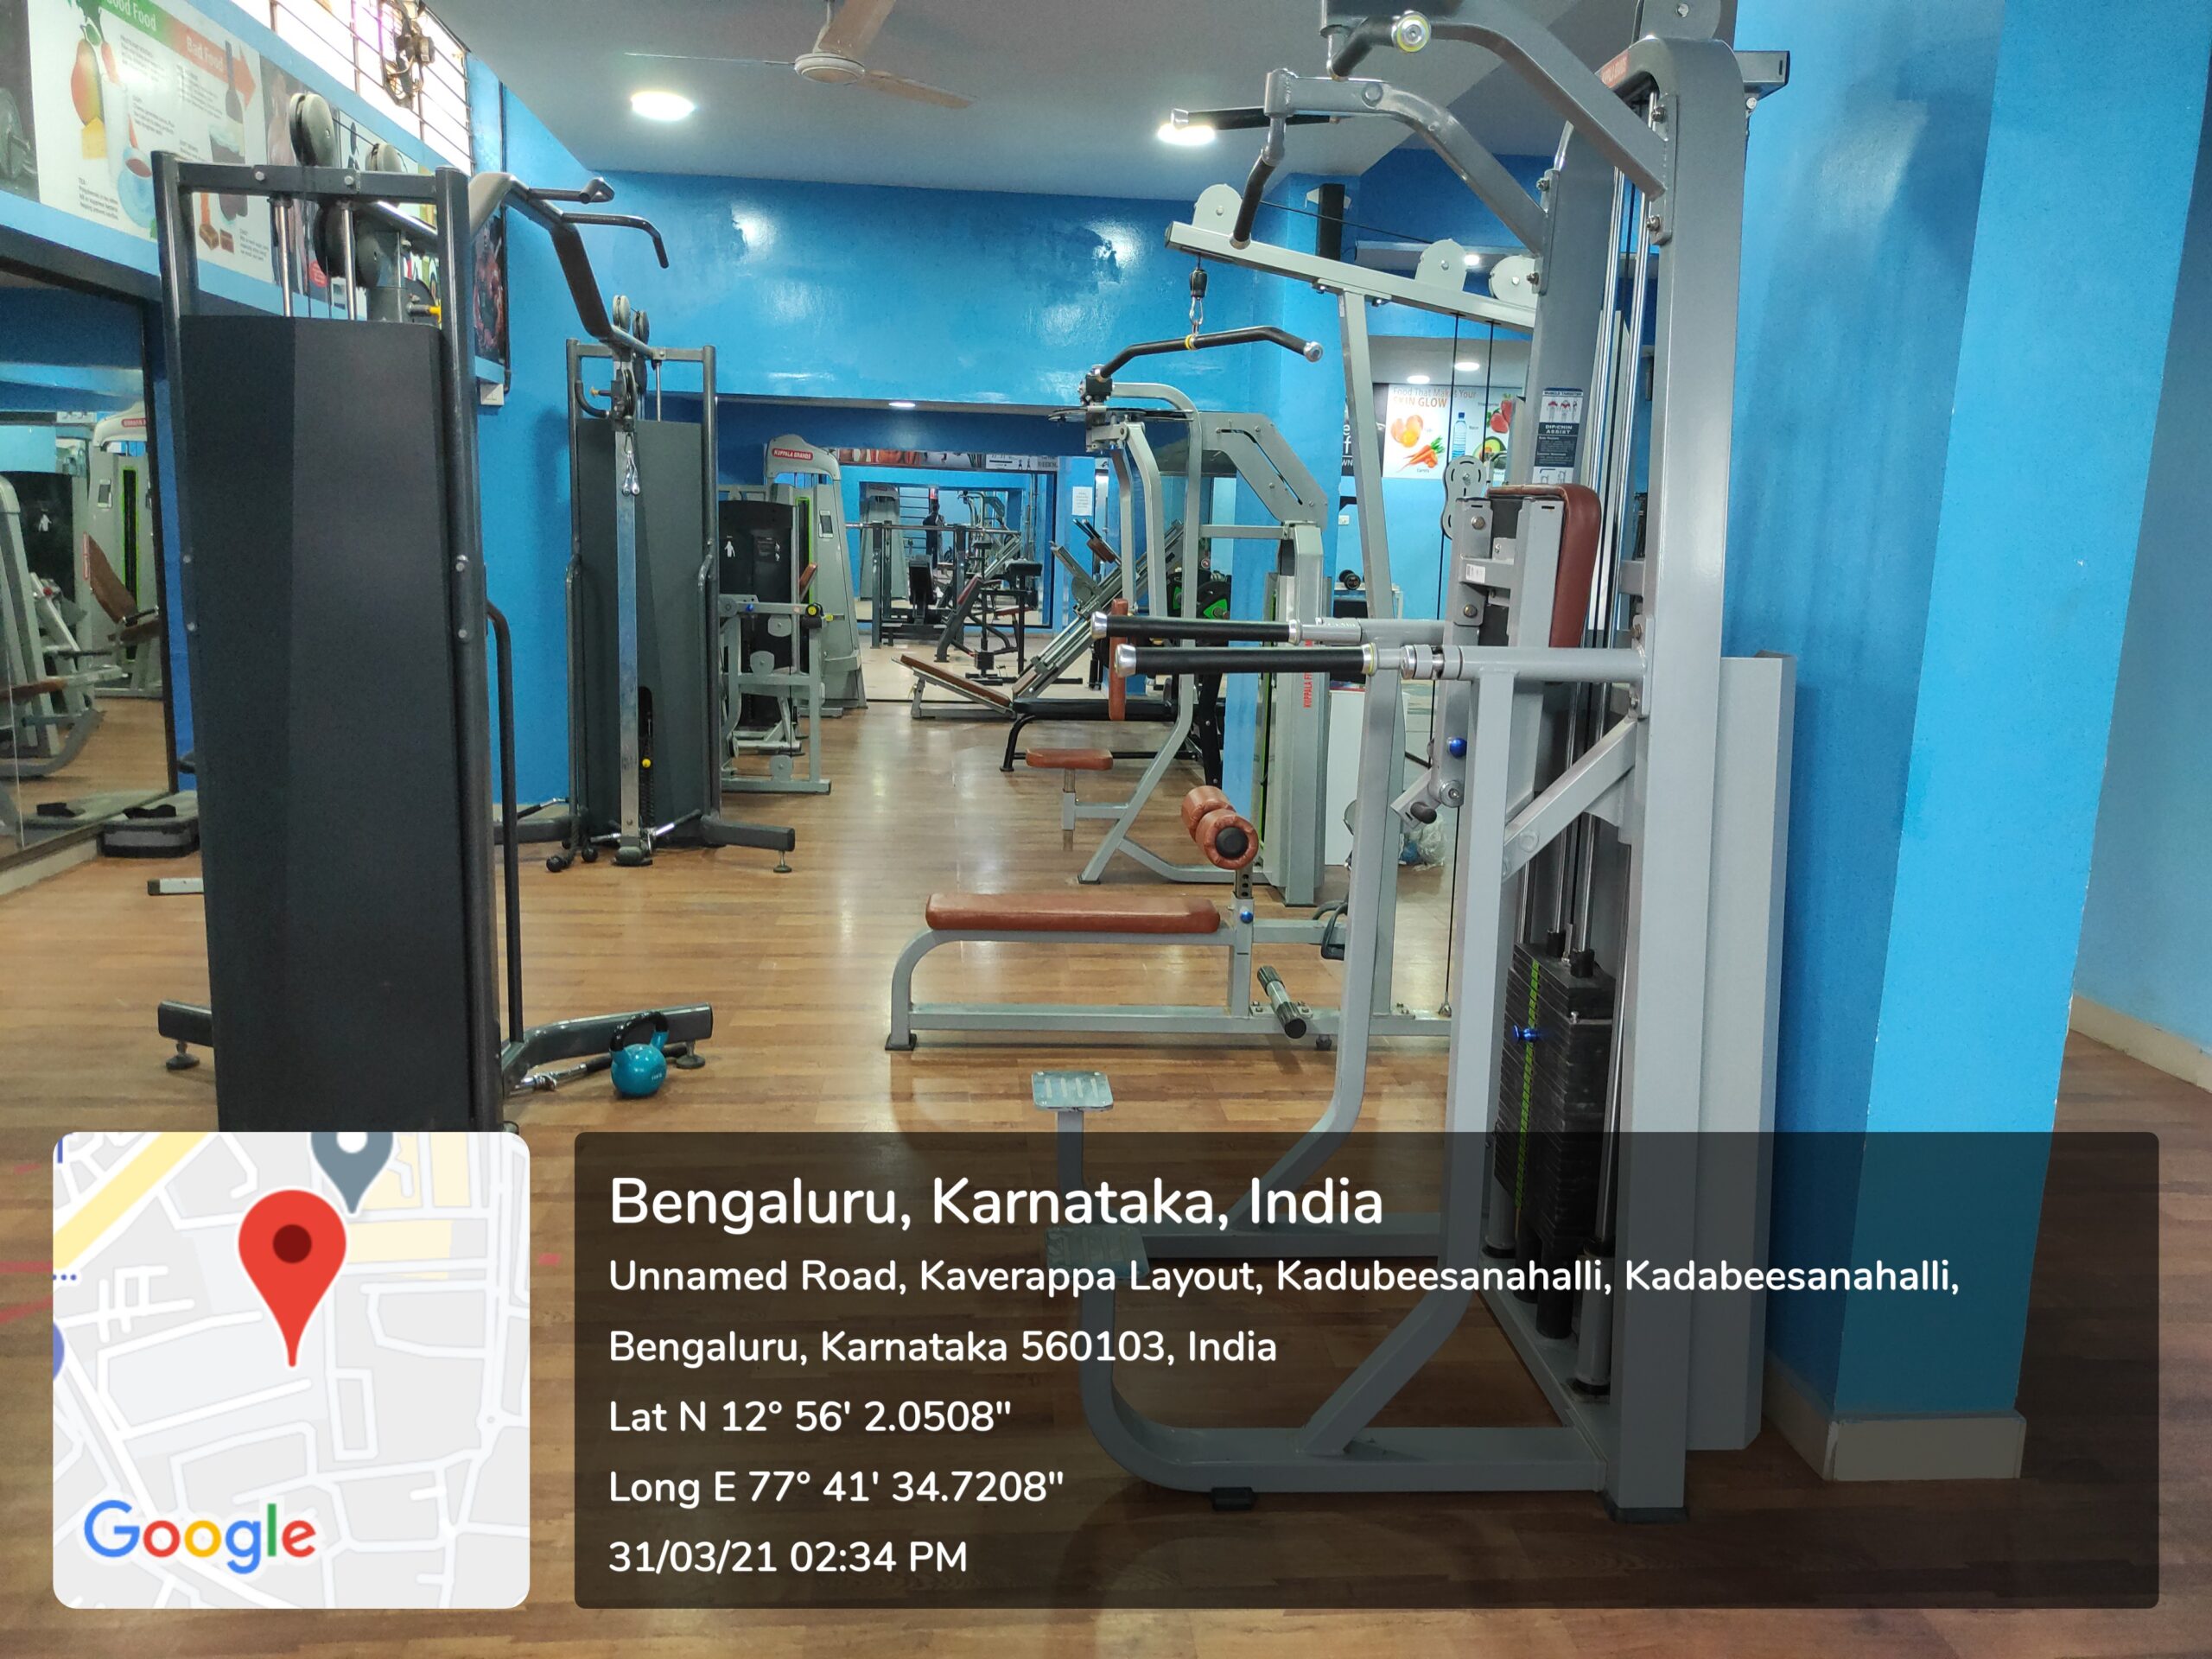 Indoor Gym- Infrastructure- Top 10 Engineering Colleges in India